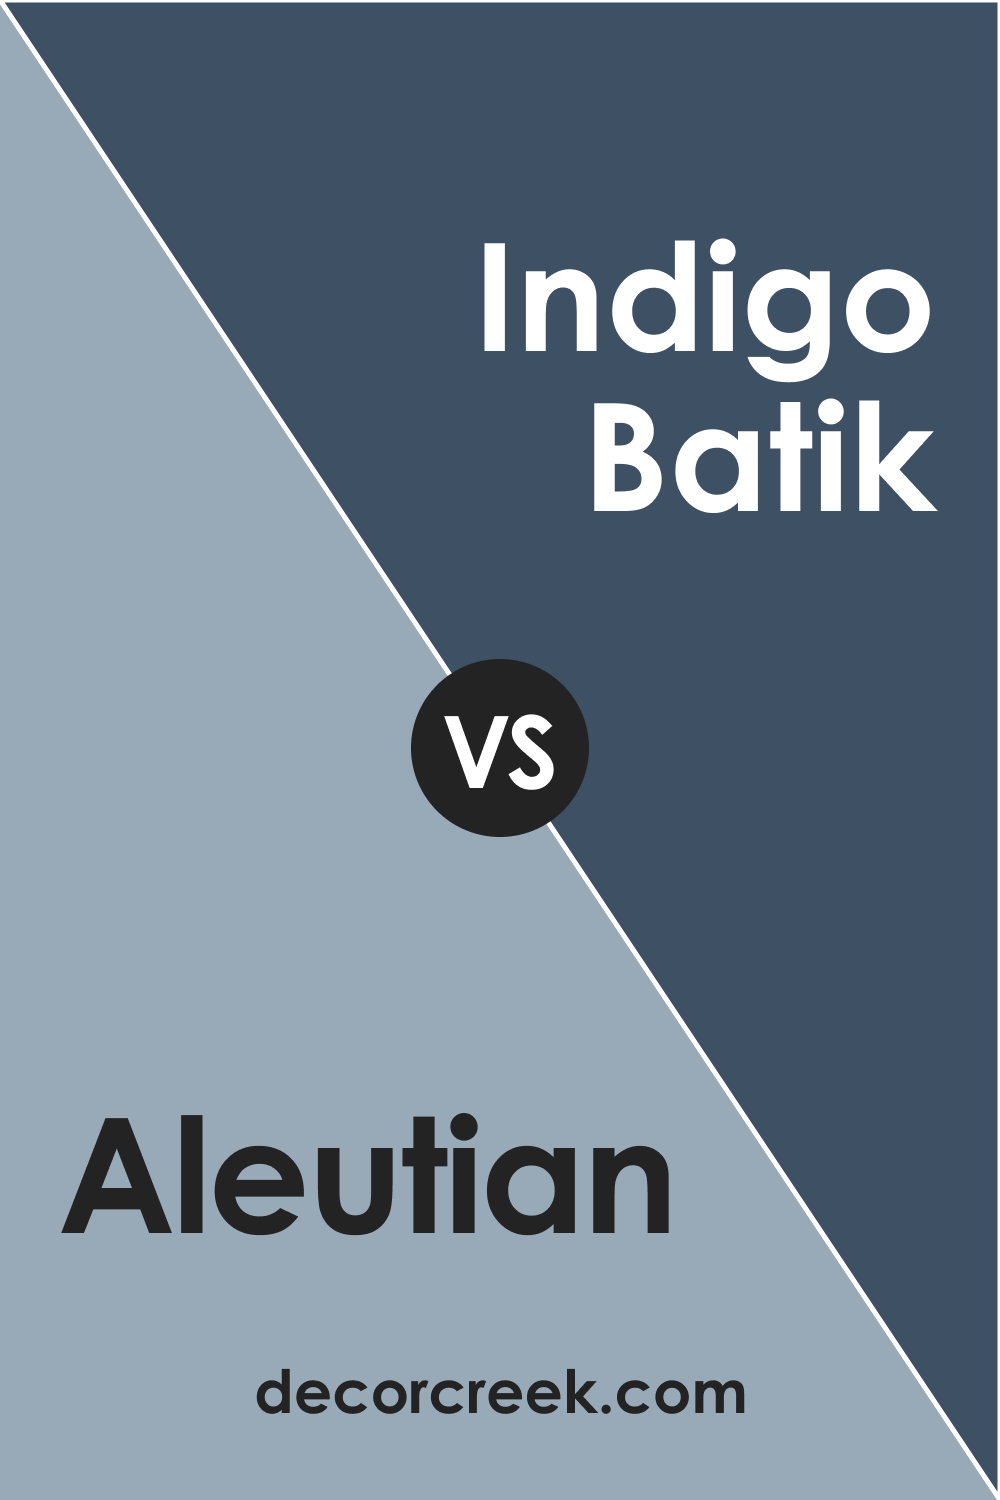 Aleutian vs Indigo Batik